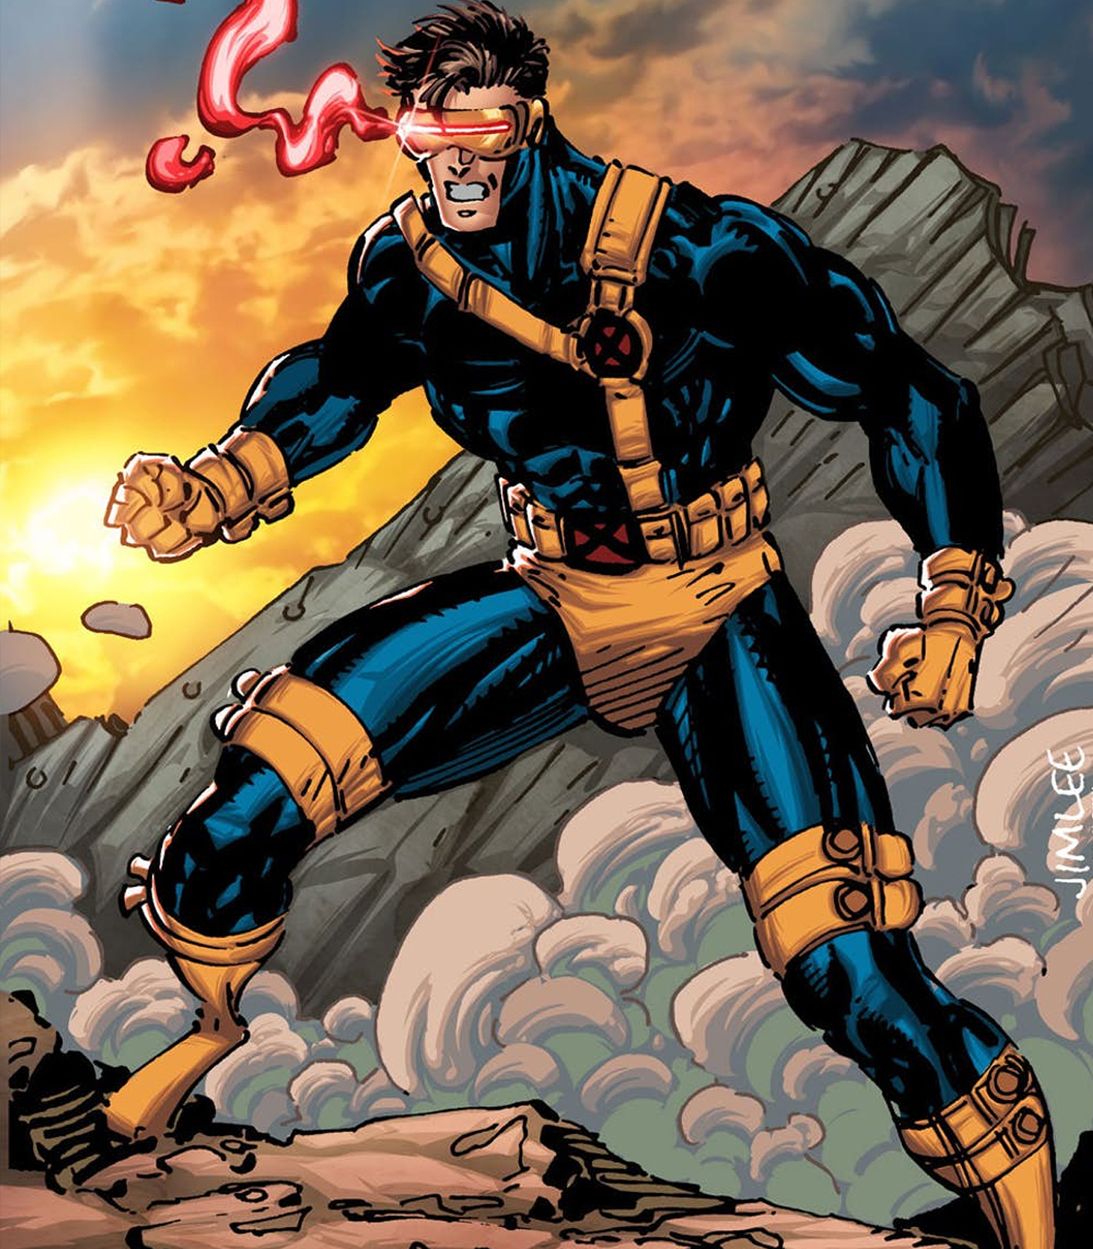 Cyclops in X-Men by Jim Lee